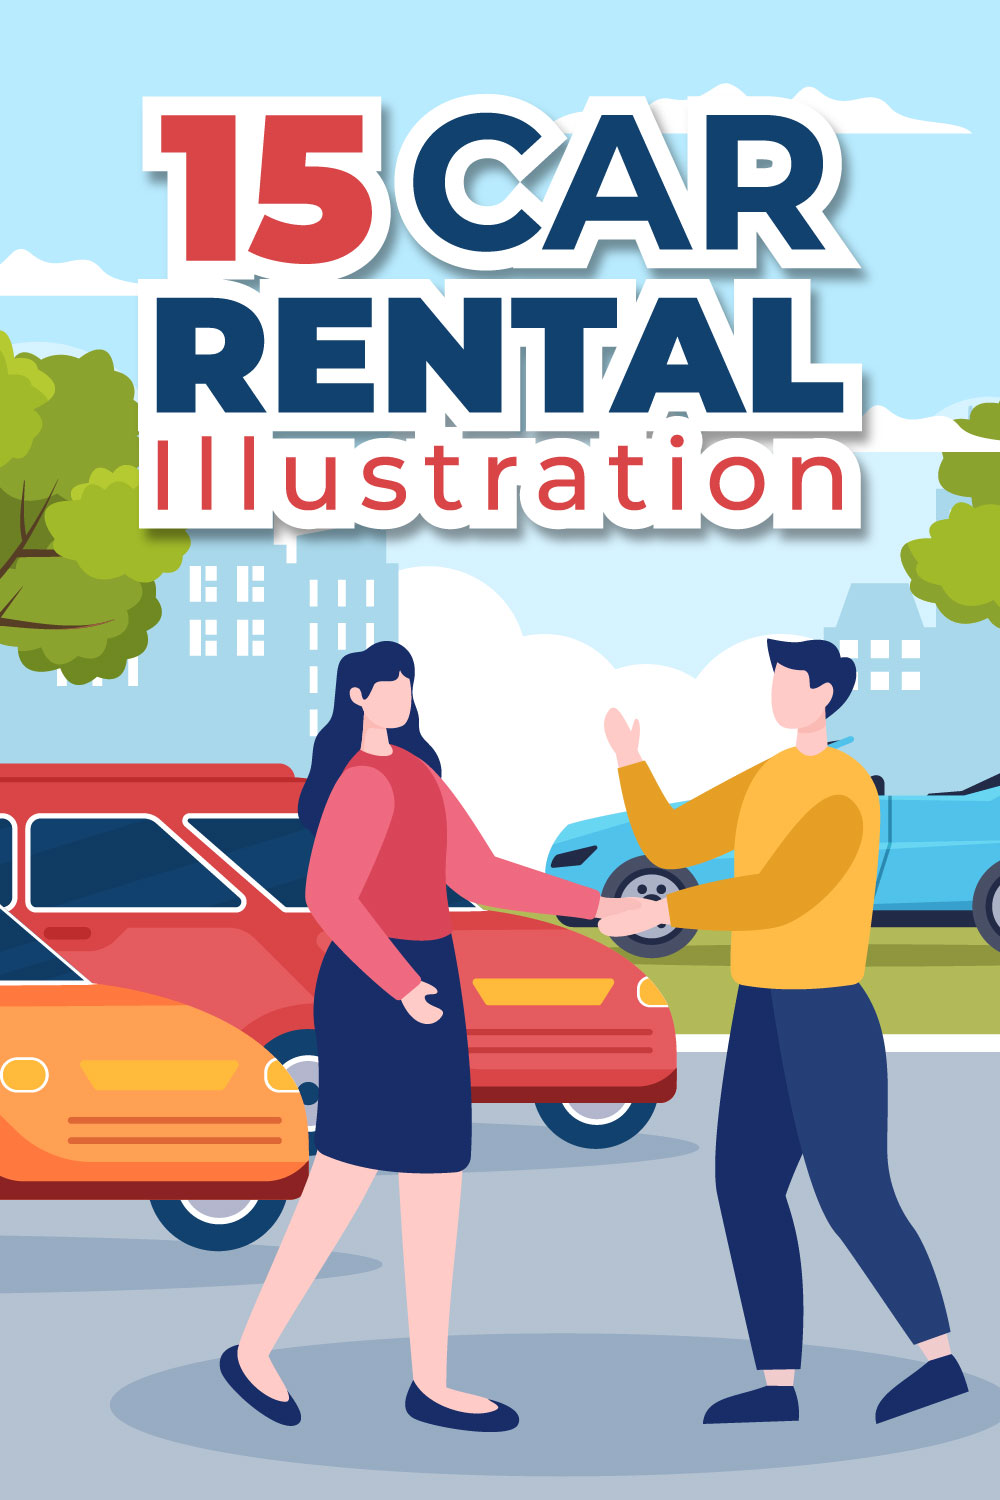 15 Car Rental Illustration pinterest image.